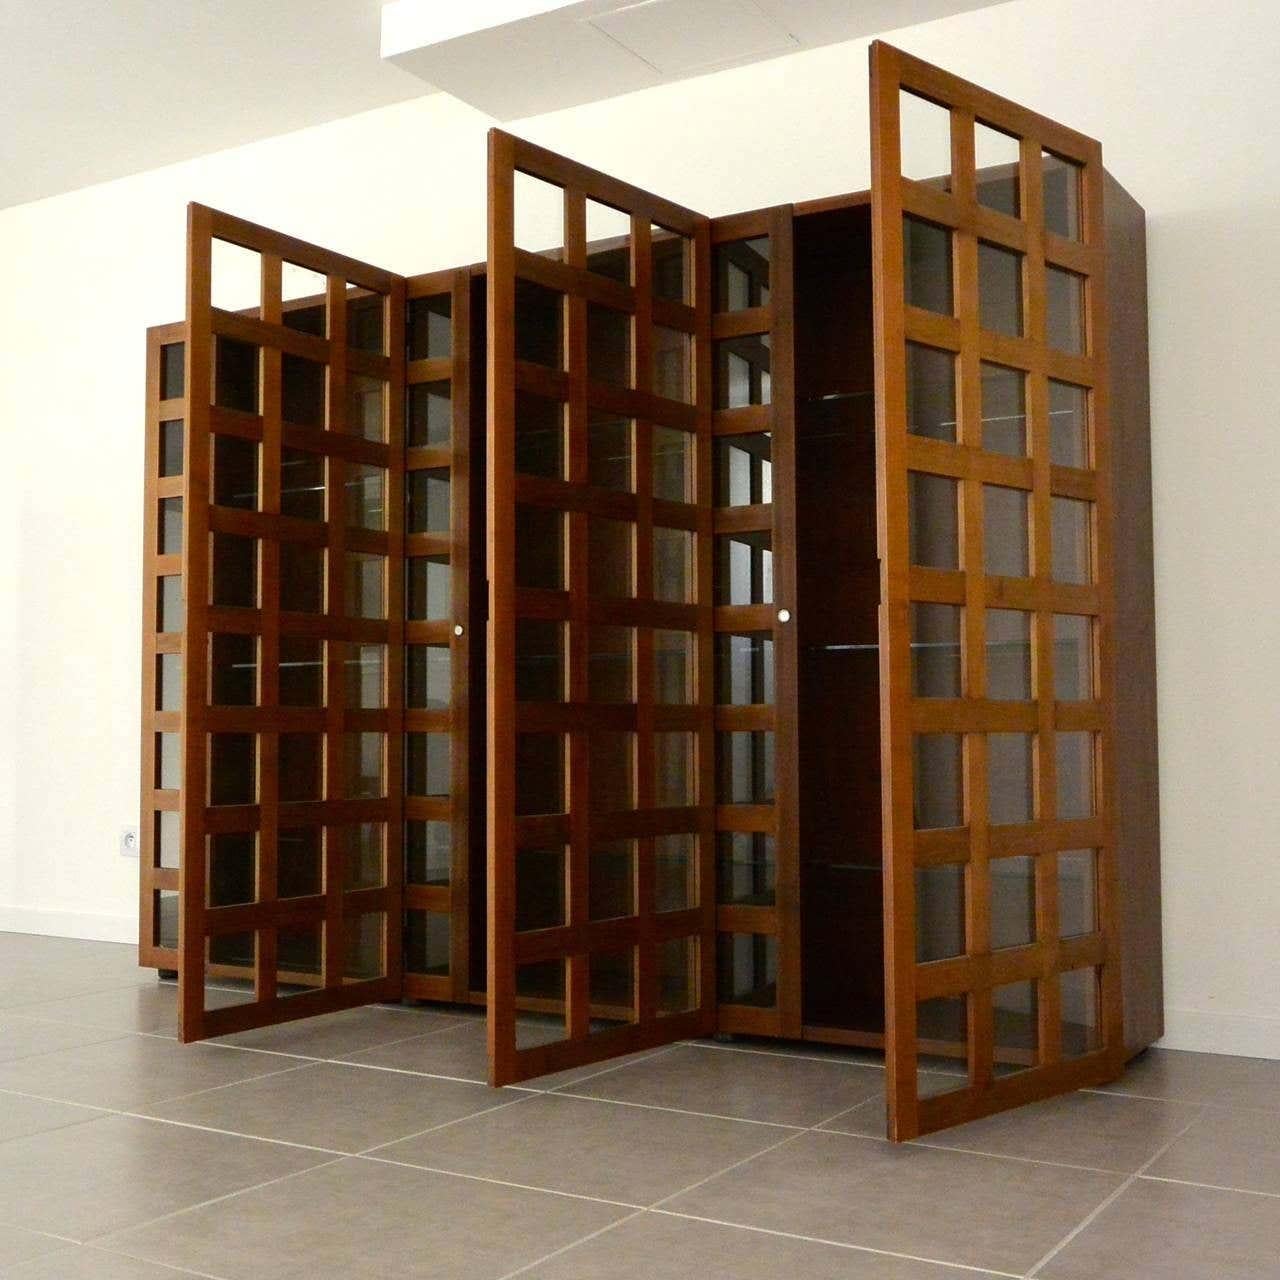 Mid-Century Modern Bookcase LB65 by Marco Zanuso from Poggi 64s